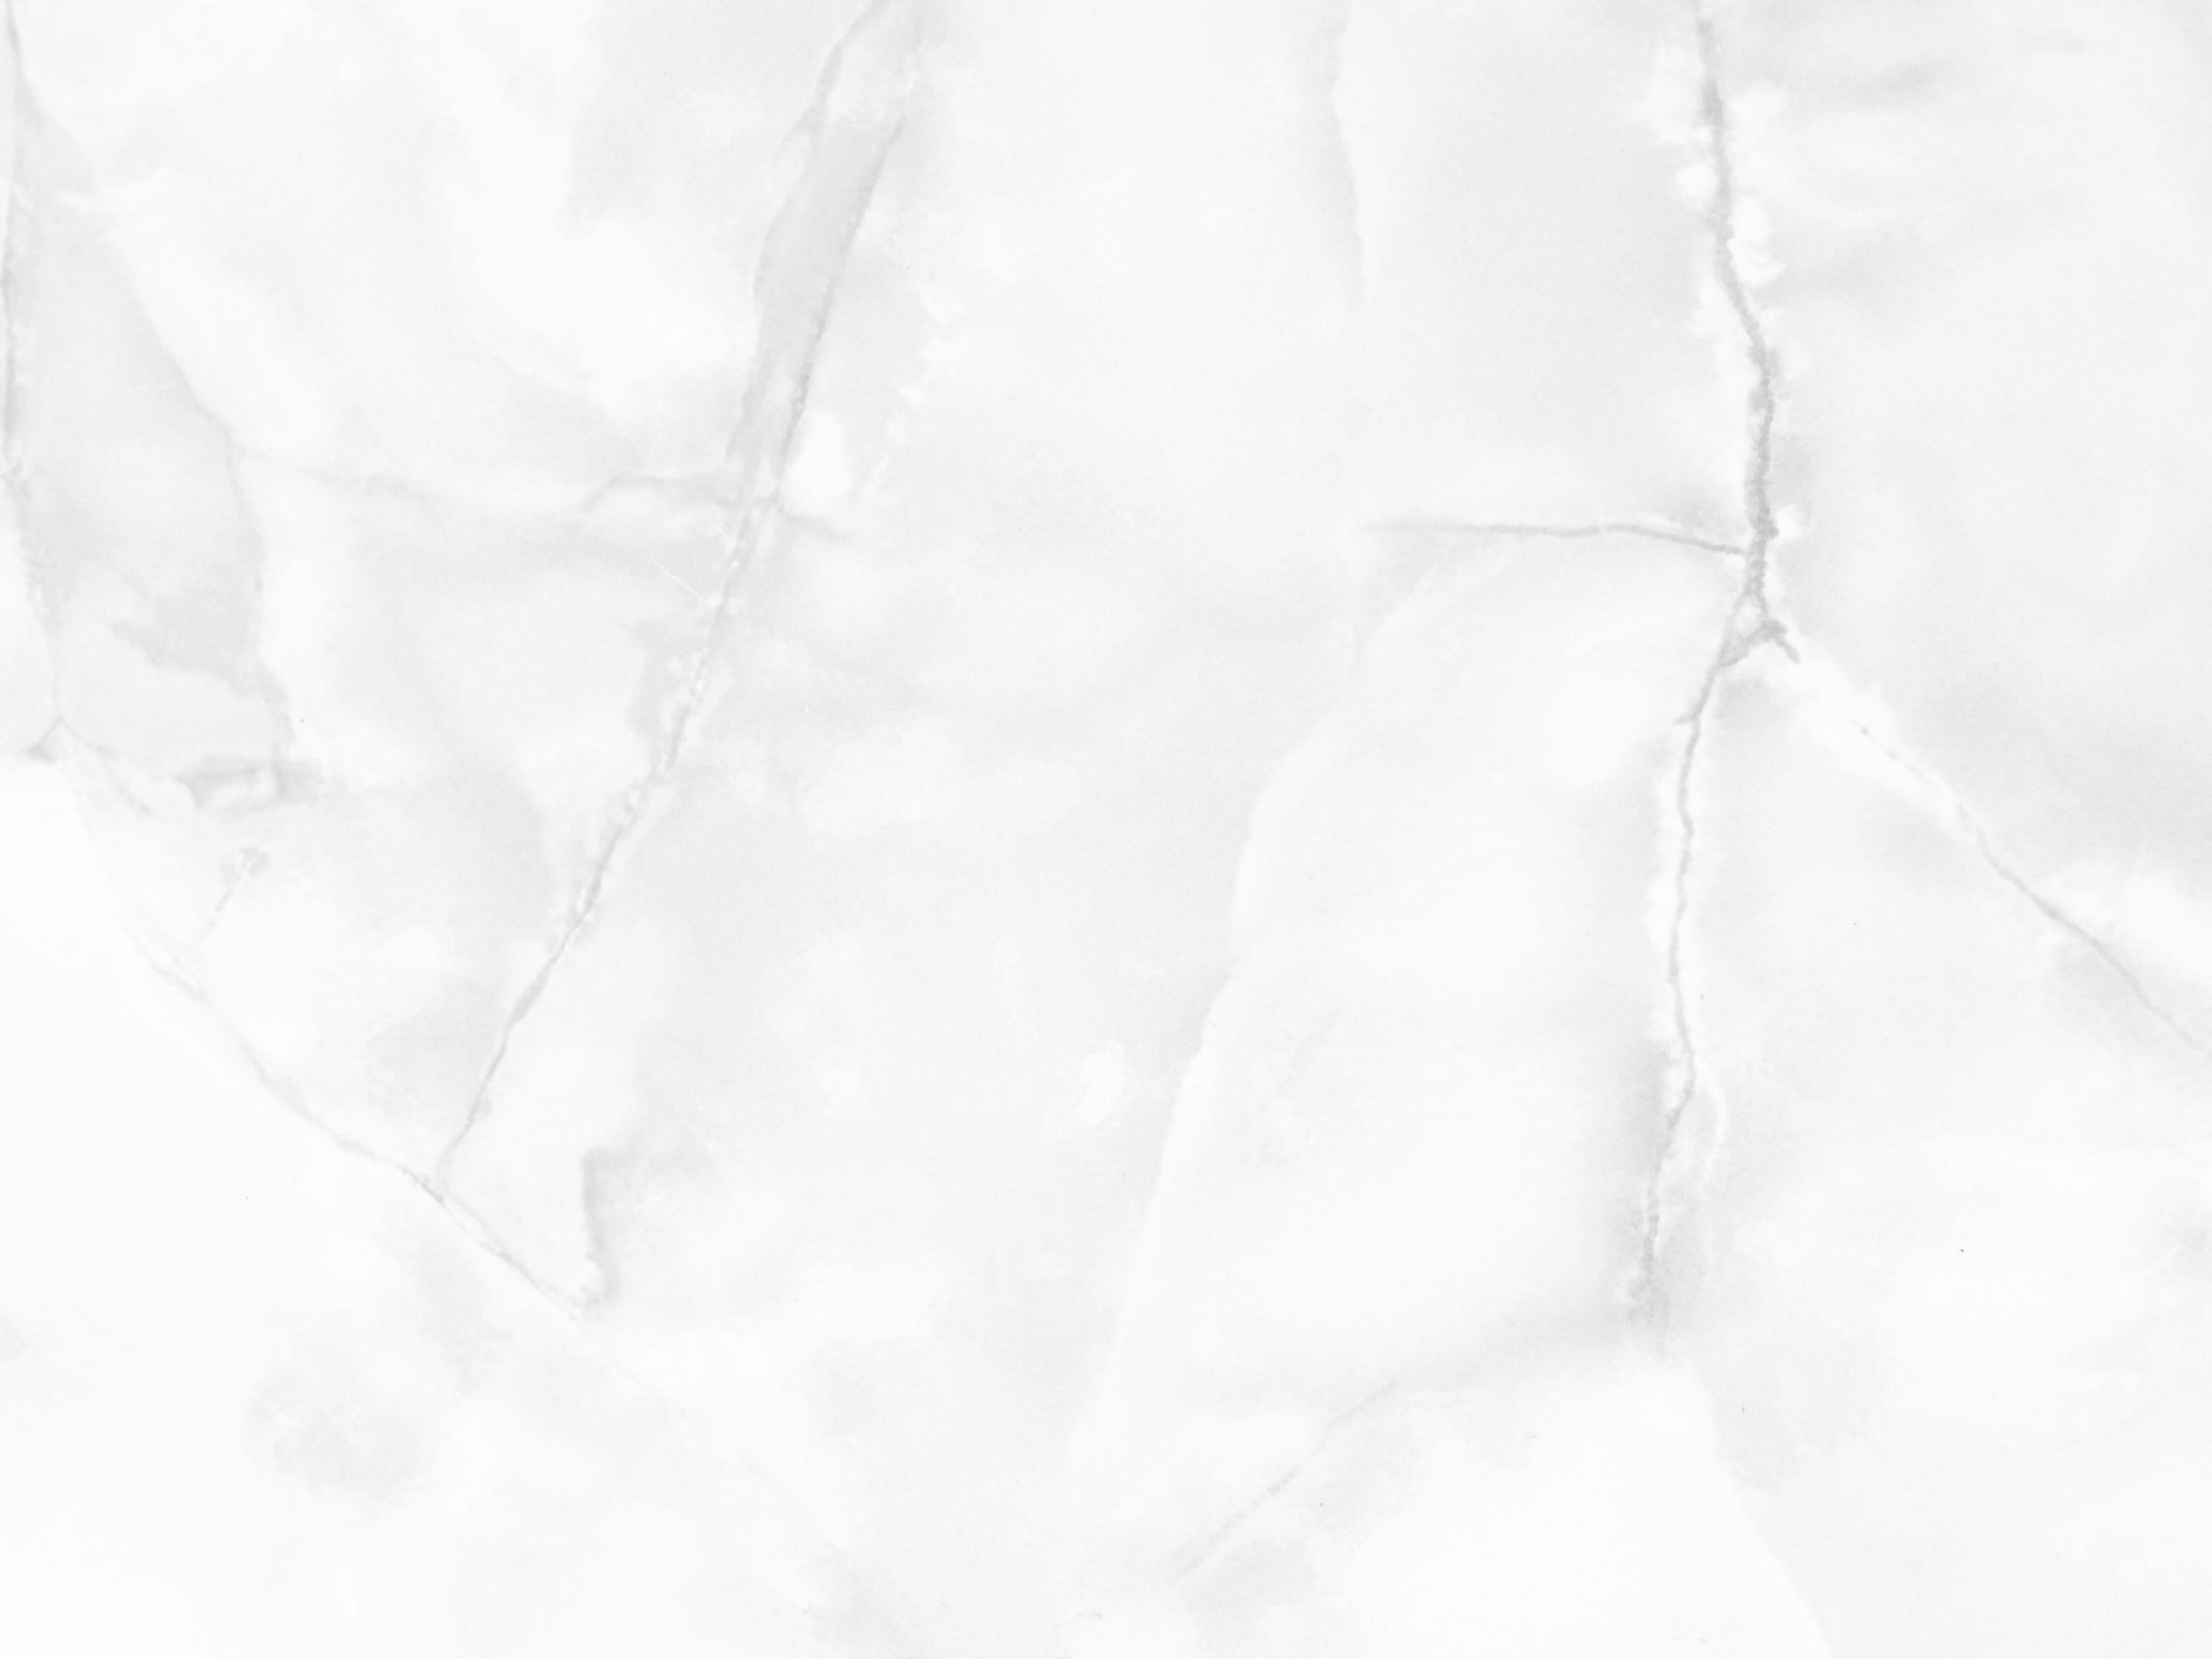 Weiß Hintergrundbild 2613x1960. Oberfläche Der Weißen Steinmarmorstruktur Rauer, Grau Weißer Ton. Verwenden Sie Dies Für Hintergrundbilder Oder Hintergrundbilder. Es Gibt Ein Leerzeichen Für Text. 15234343 Stock Photo Bei Vecteezy